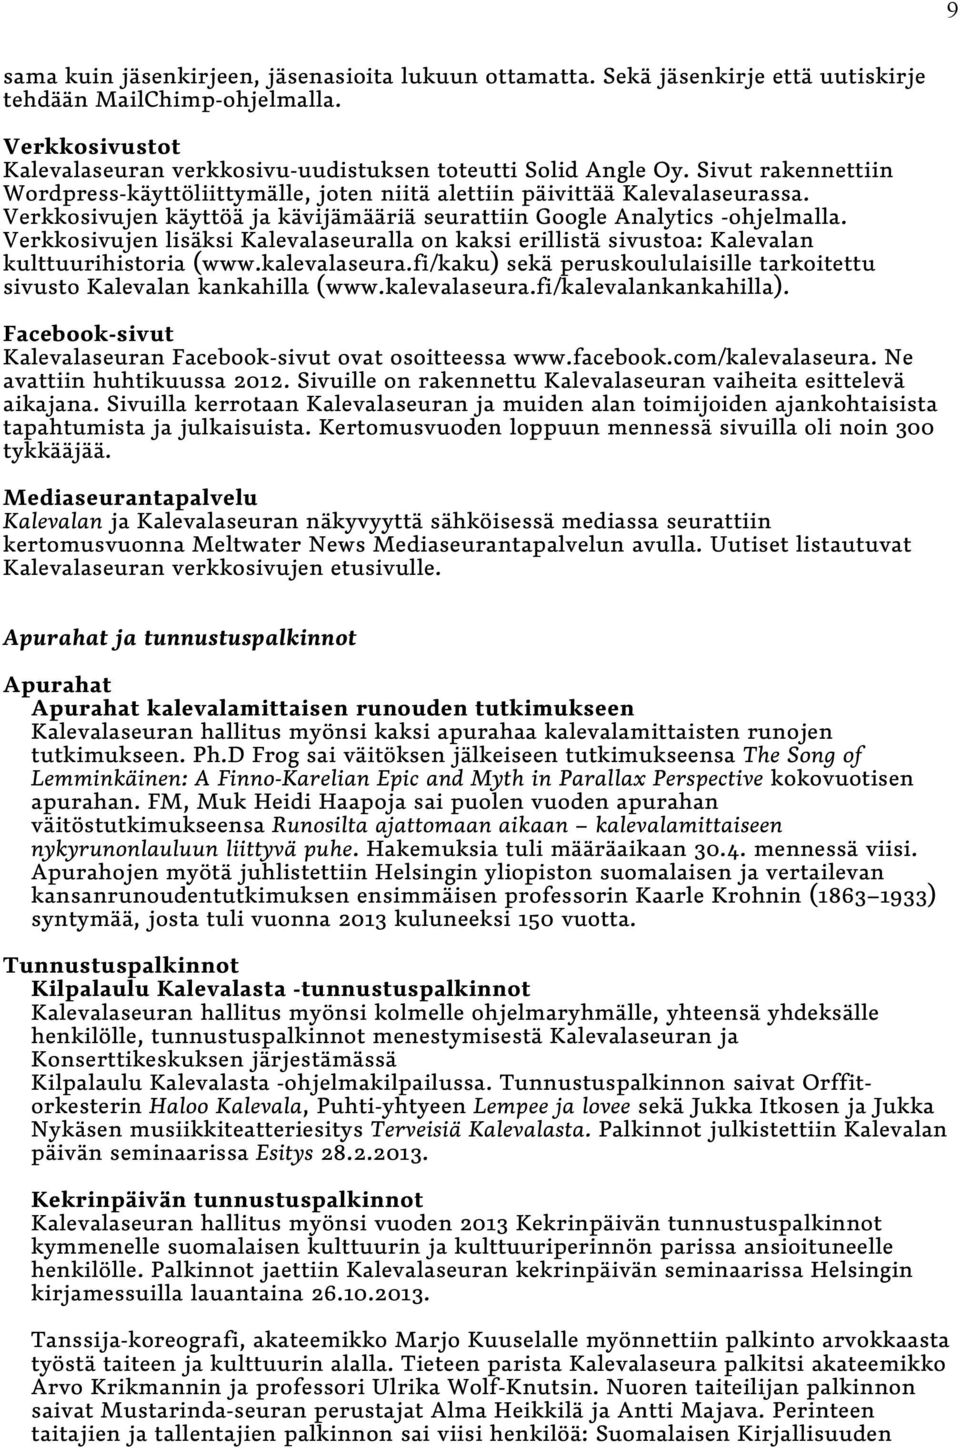 Verkkosivujen lisäksi Kalevalaseuralla on kaksi erillistä sivustoa: Kalevalan kulttuurihistoria (www.kalevalaseura.fi/kaku) sekä peruskoululaisille tarkoitettu sivusto Kalevalan kankahilla (www.